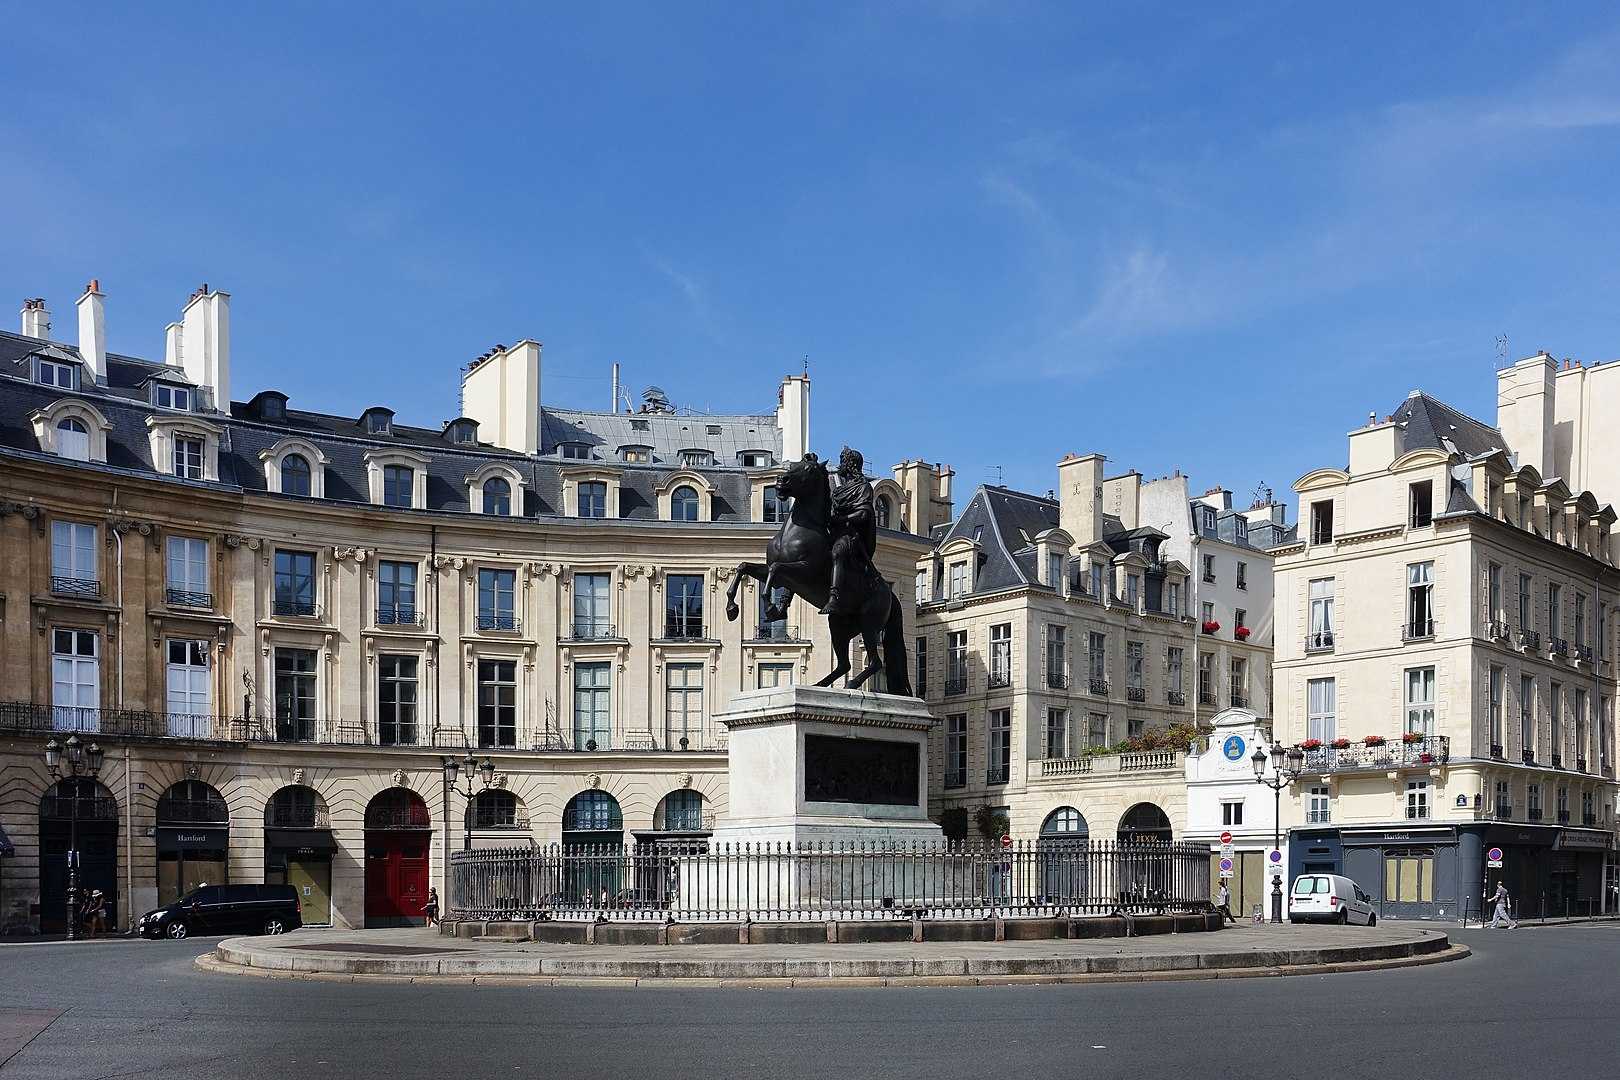 By Guilhem Vellut from Paris, France - Place de la Victoire @ Paris, CC BY 2.0, https://commons.wikimedia.org/w/index.php?curid=50749600